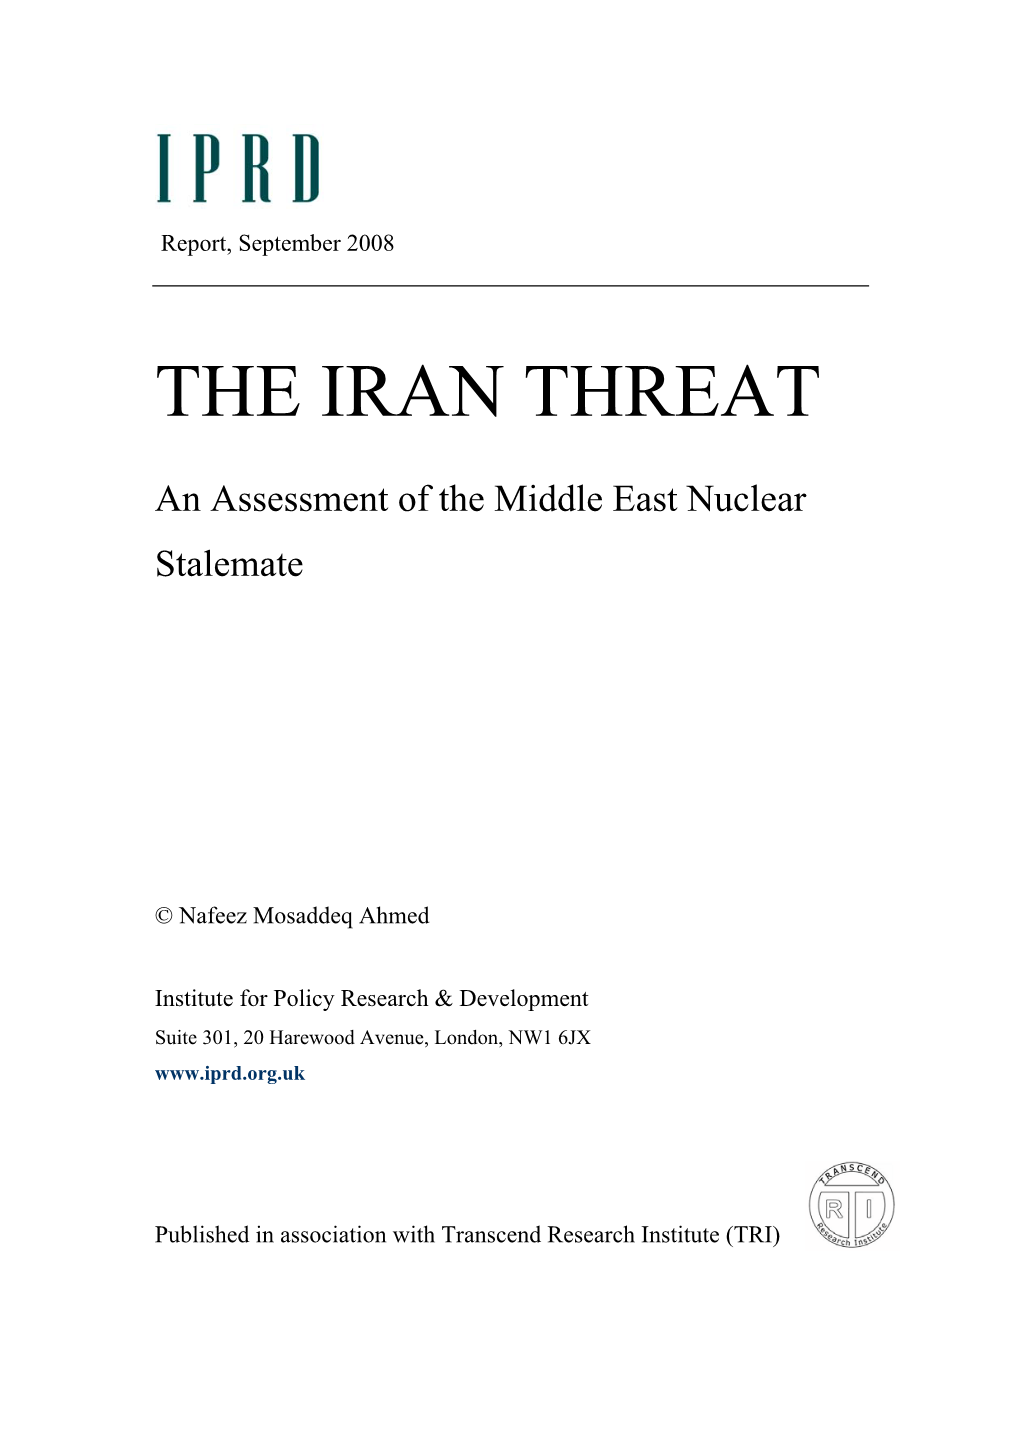 IRAN Briefing